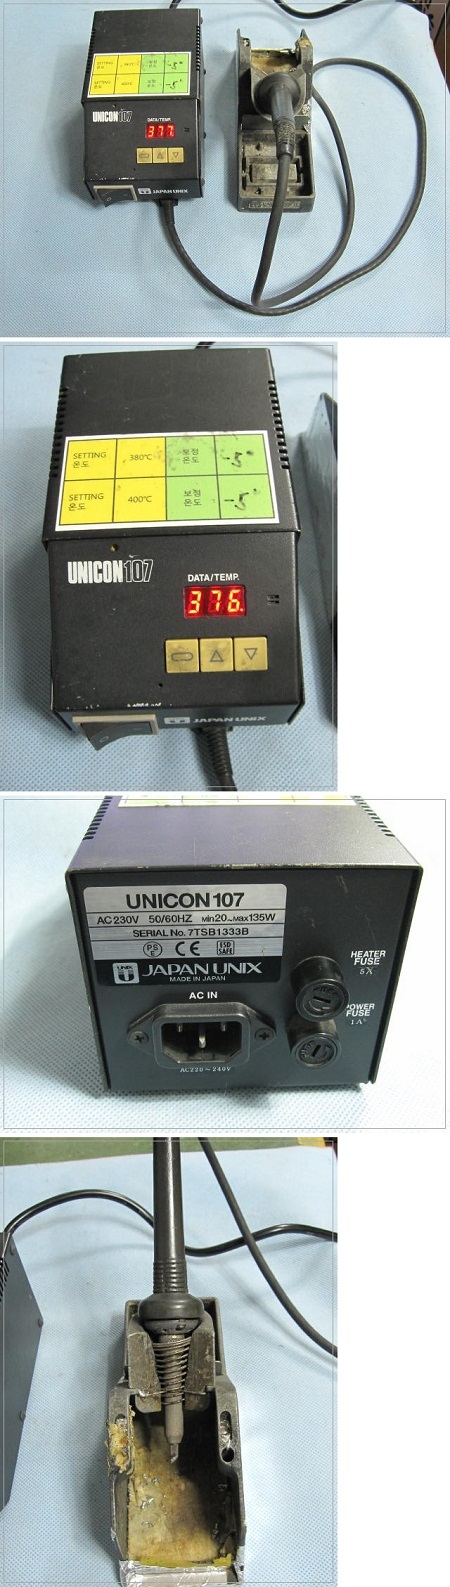 UNICON107-2 (3).jpg